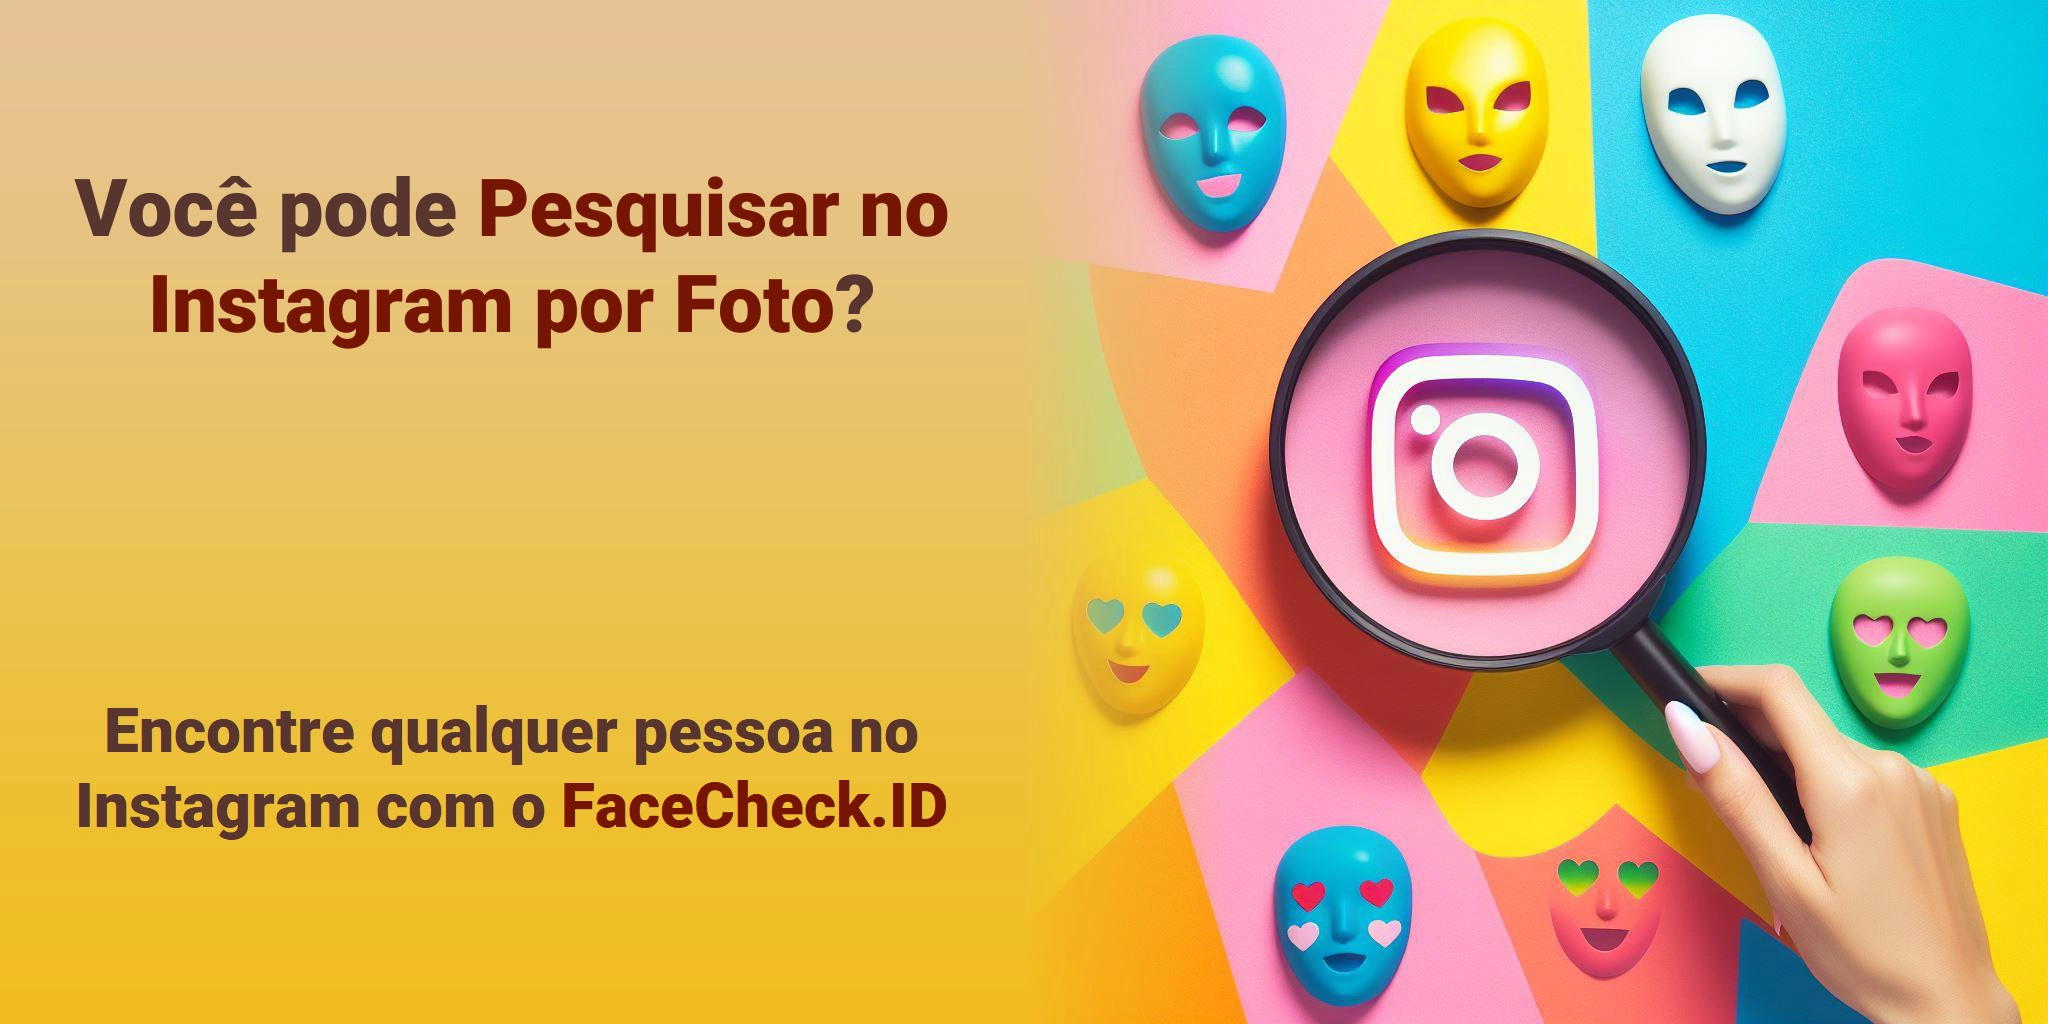 Você pode Pesquisar no Instagram por Foto? Encontre qualquer pessoa no Instagram com o FaceCheck.ID